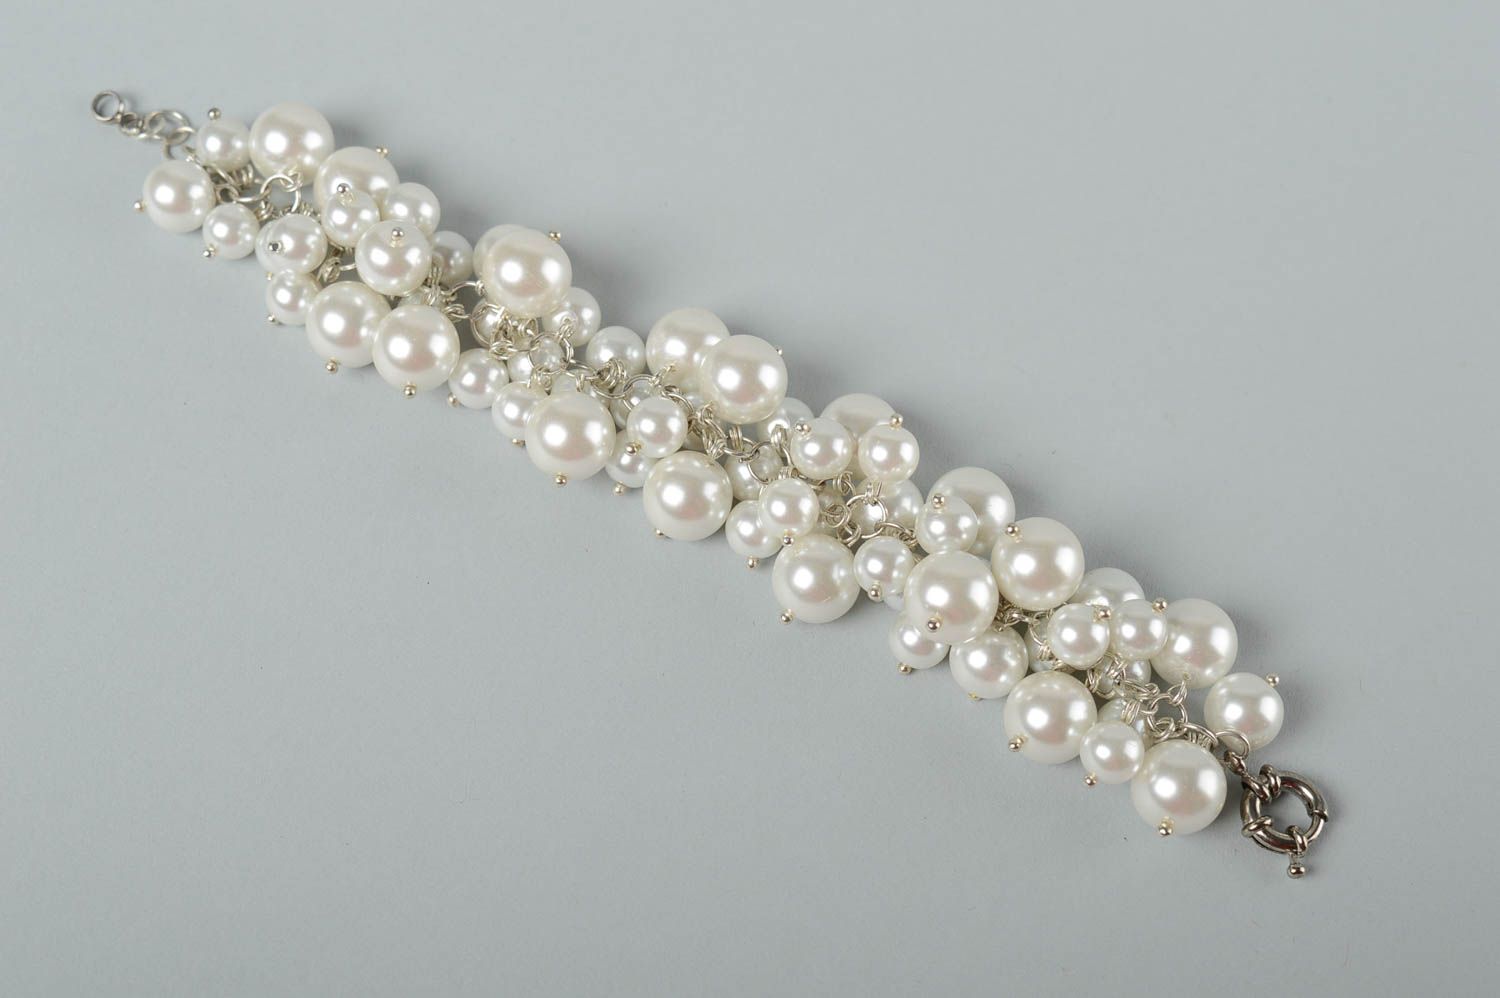 Handmade white beads chain bracelet for women photo 2